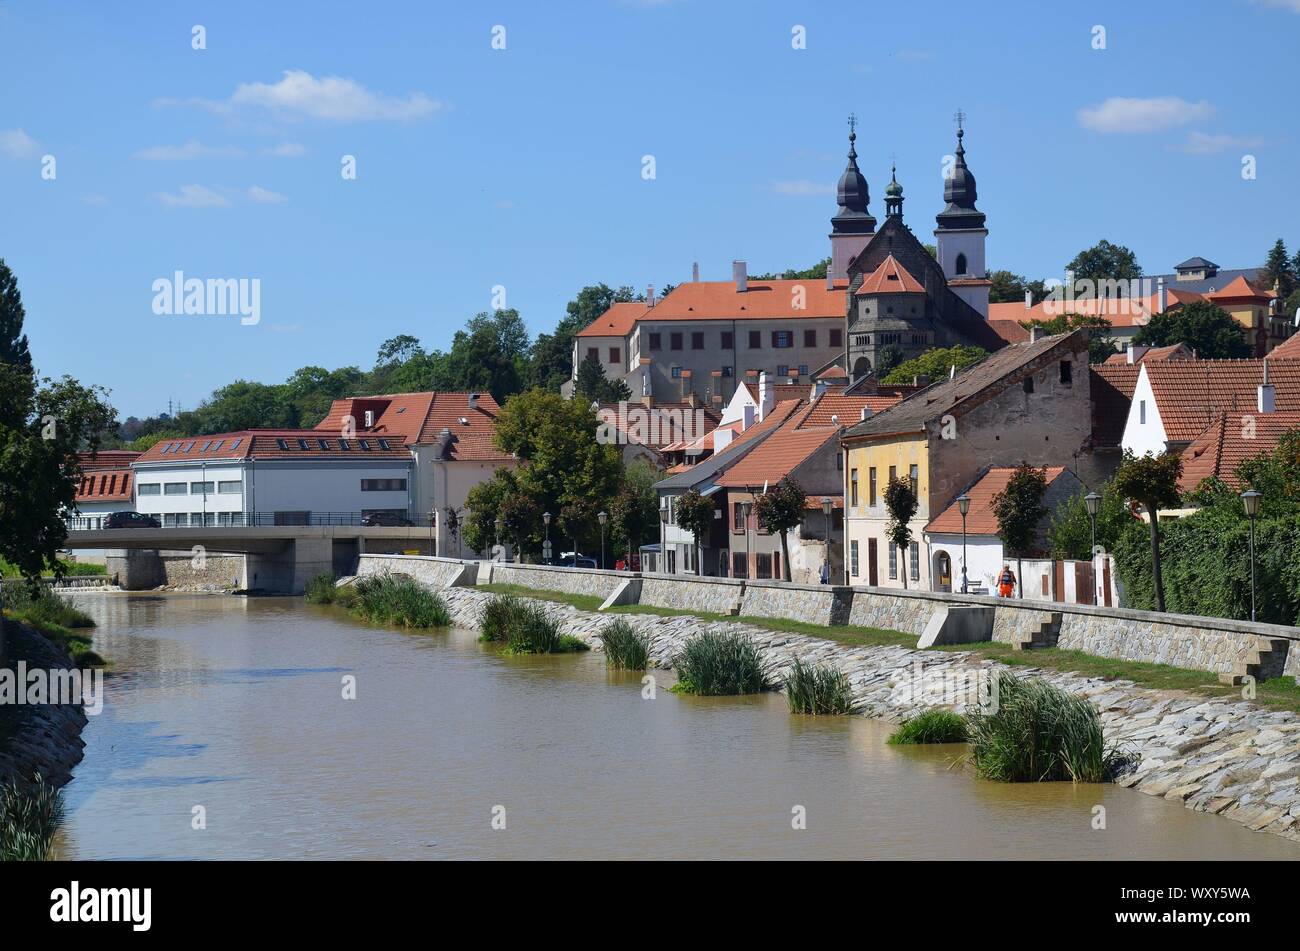 Trebic in Repubblica Ceca, UNESCO Weltkulturerbe: die aus der Romanik stammende Basilika vom Fluss Jihlava aus gesehen Foto Stock